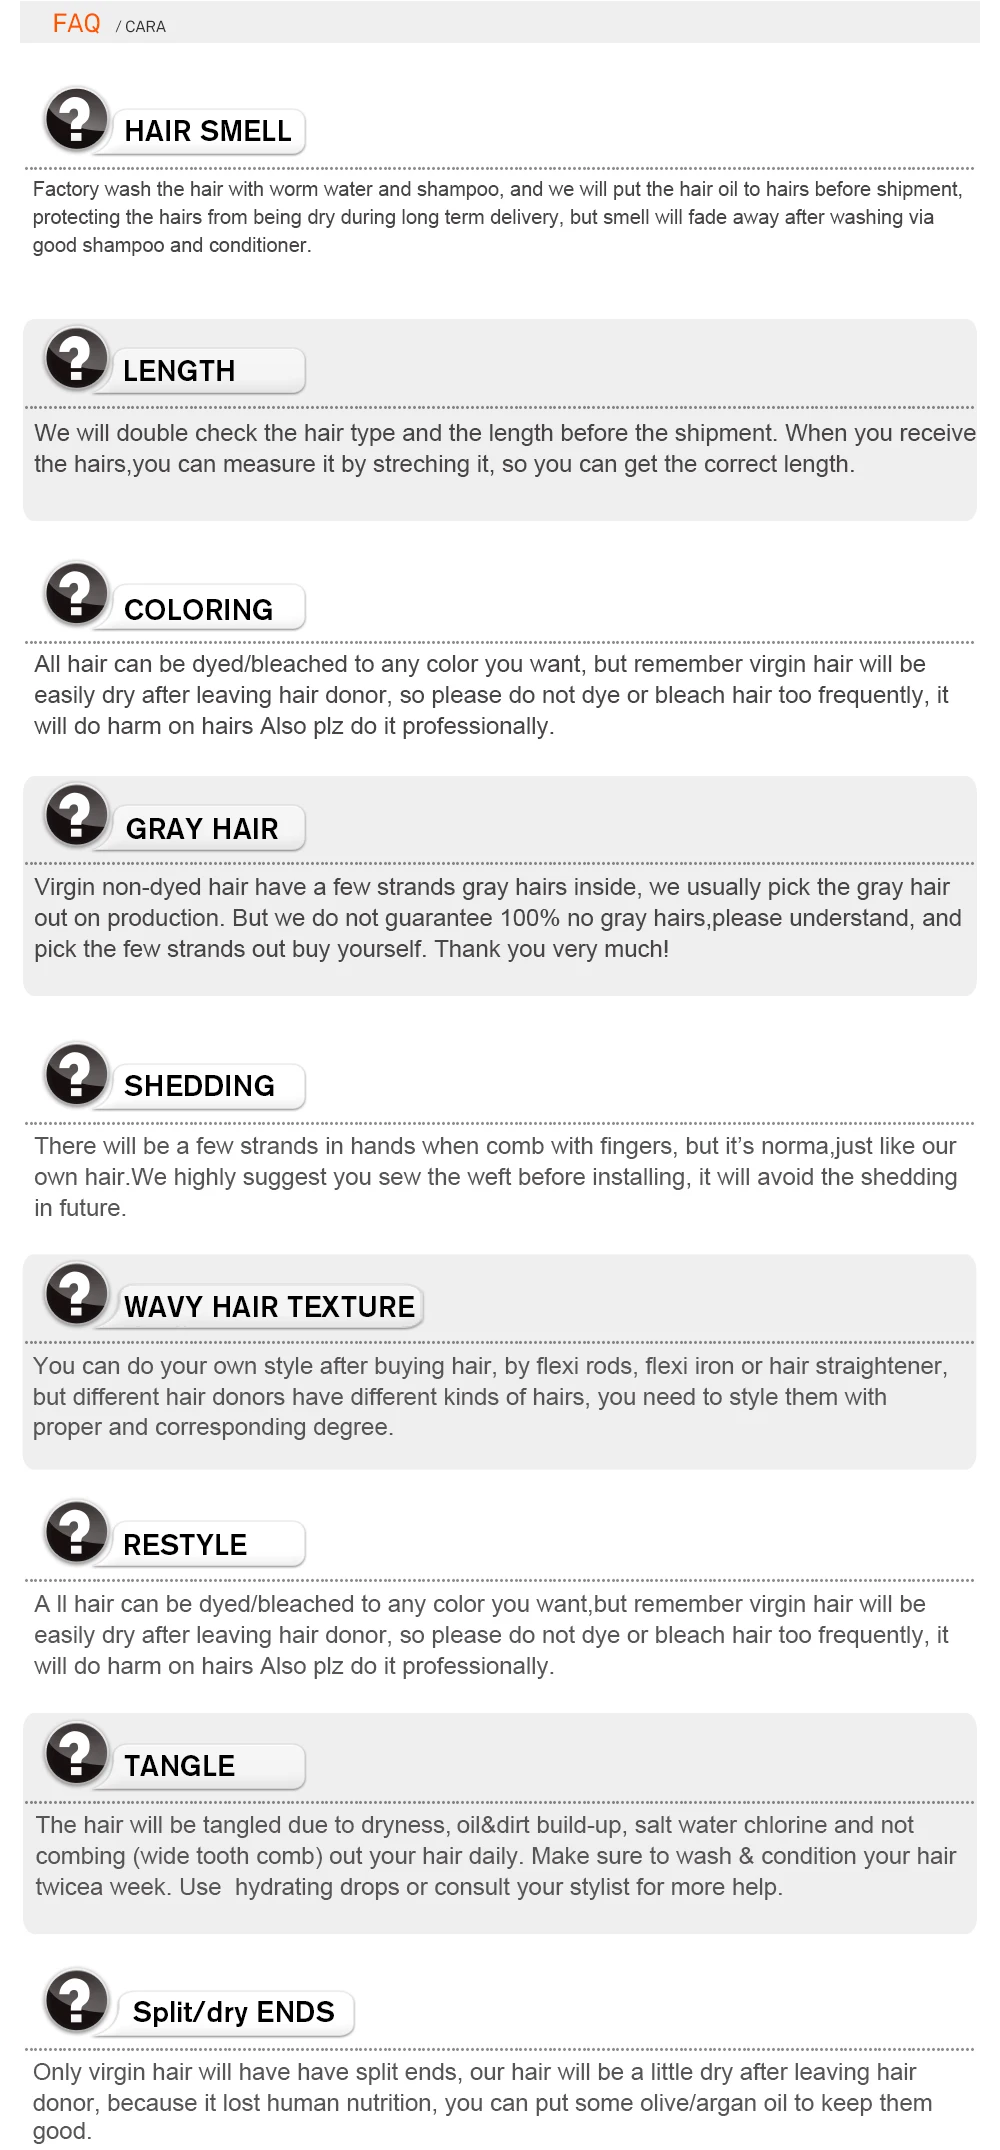 Предварительно выщипанные кружевные передние человеческие волосы парики с детскими волосами 250% бразильский#27 медовый блондин цвет свободная волна кружева парик CARA remy волосы